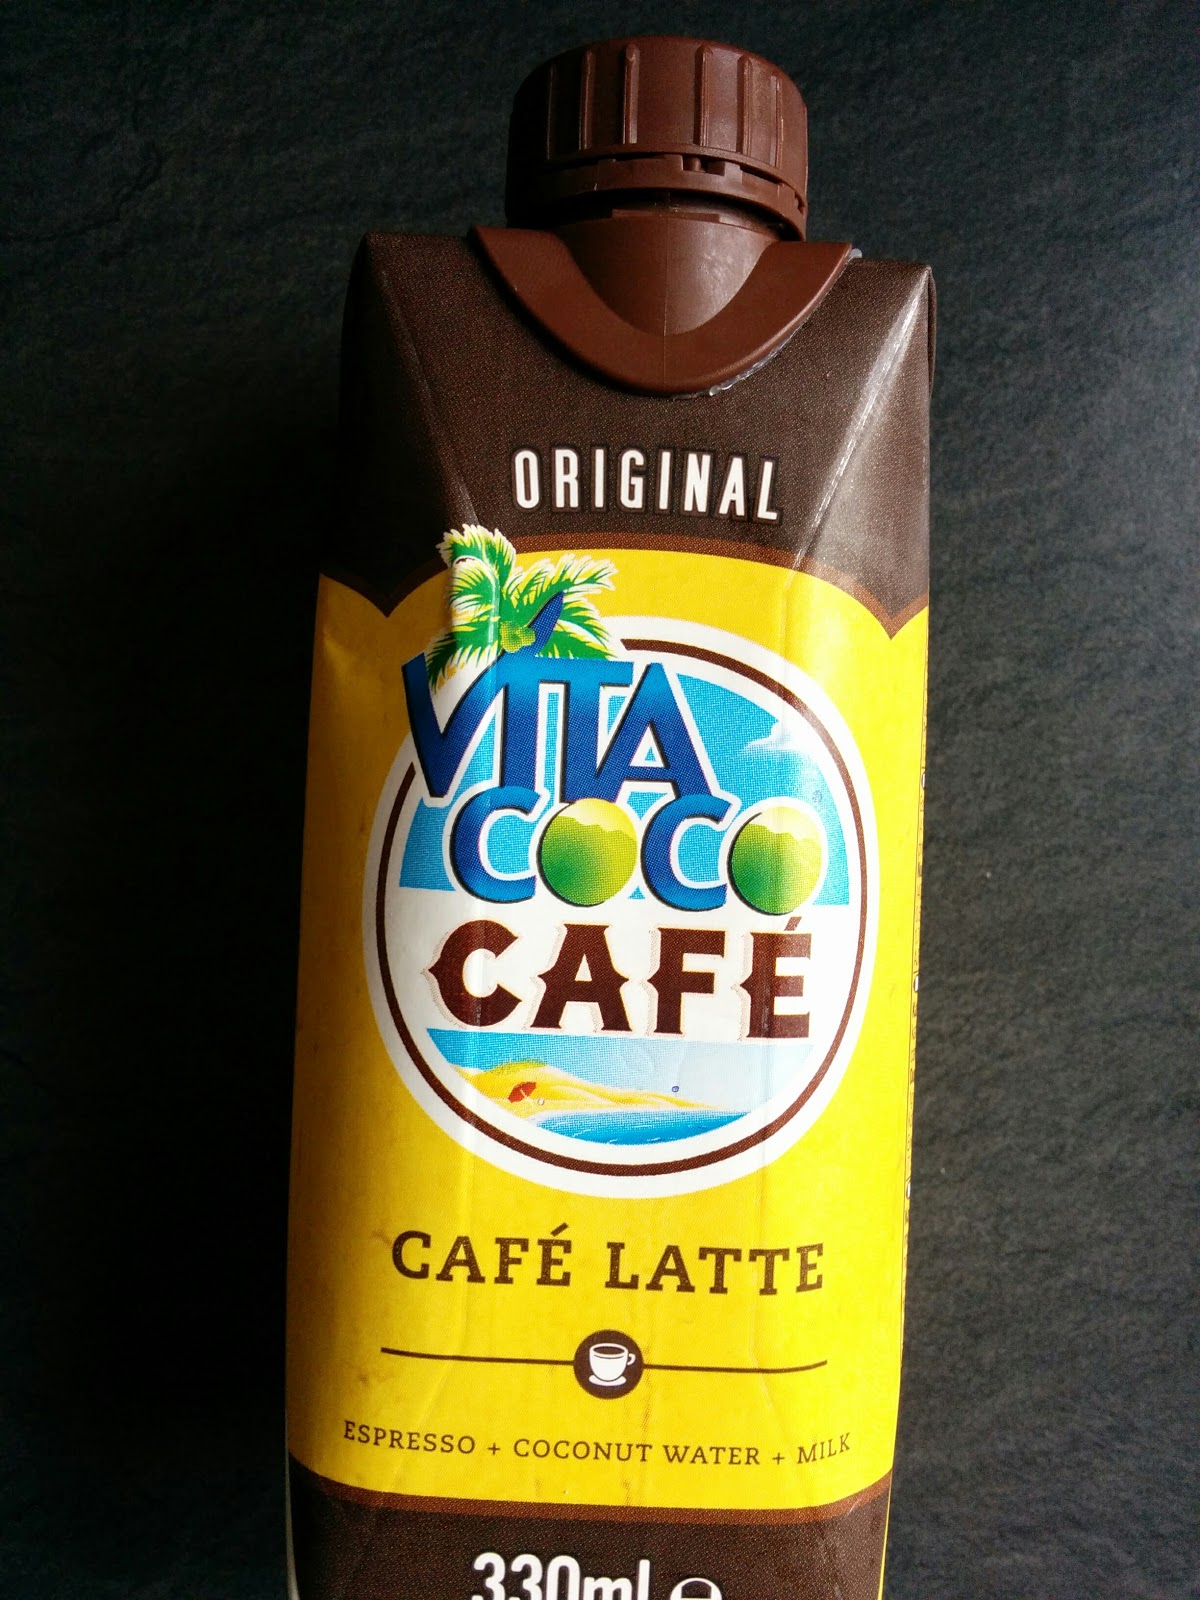 vita coco coconut milk review